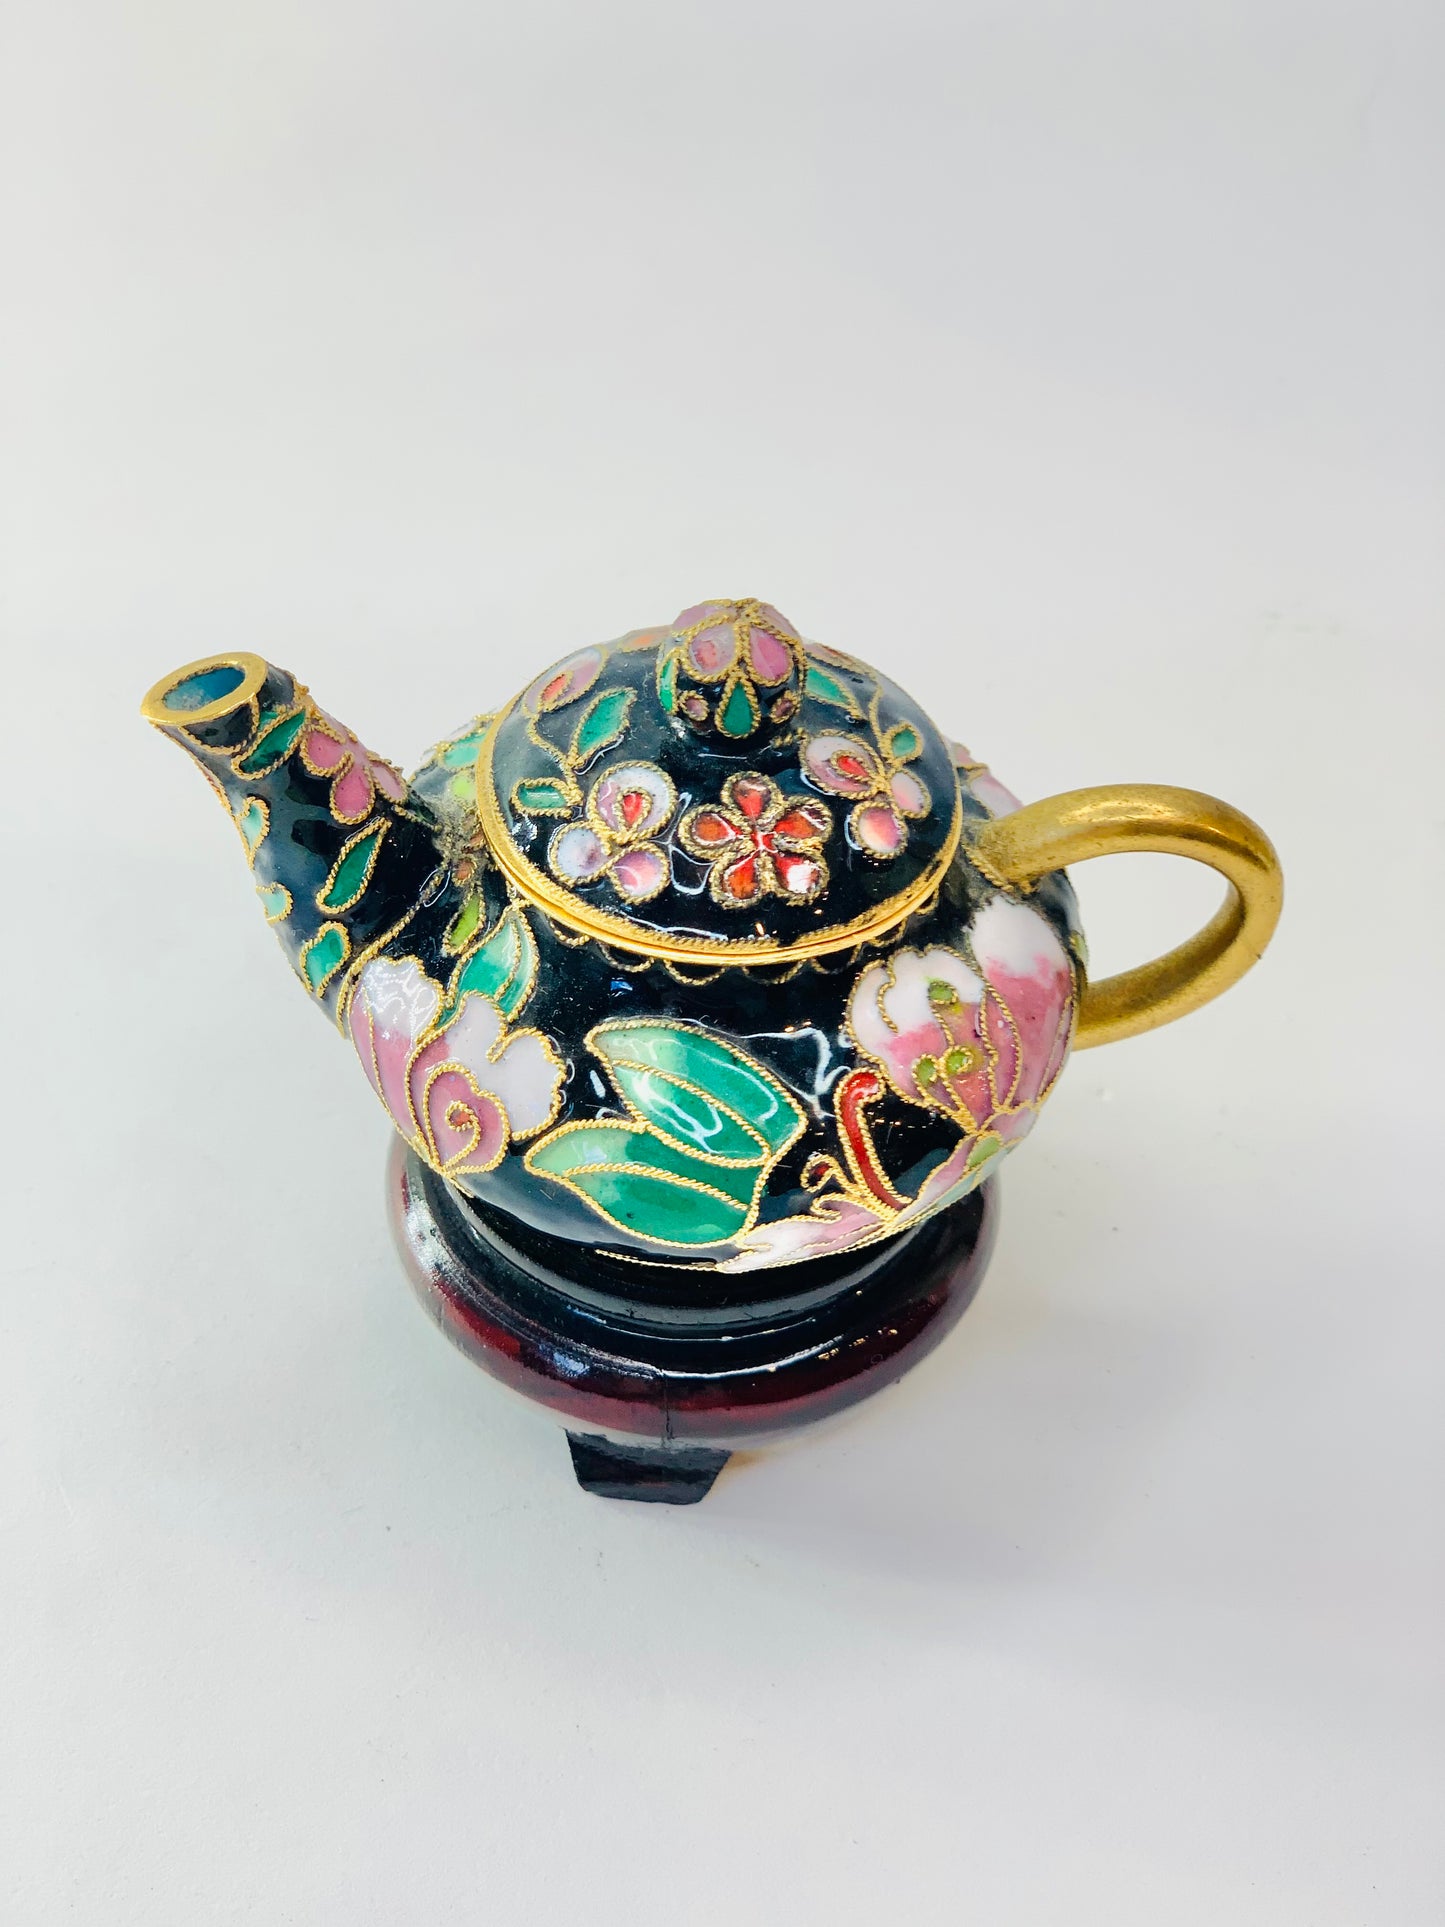 Antique mini cloisonné teapot with wooden stand